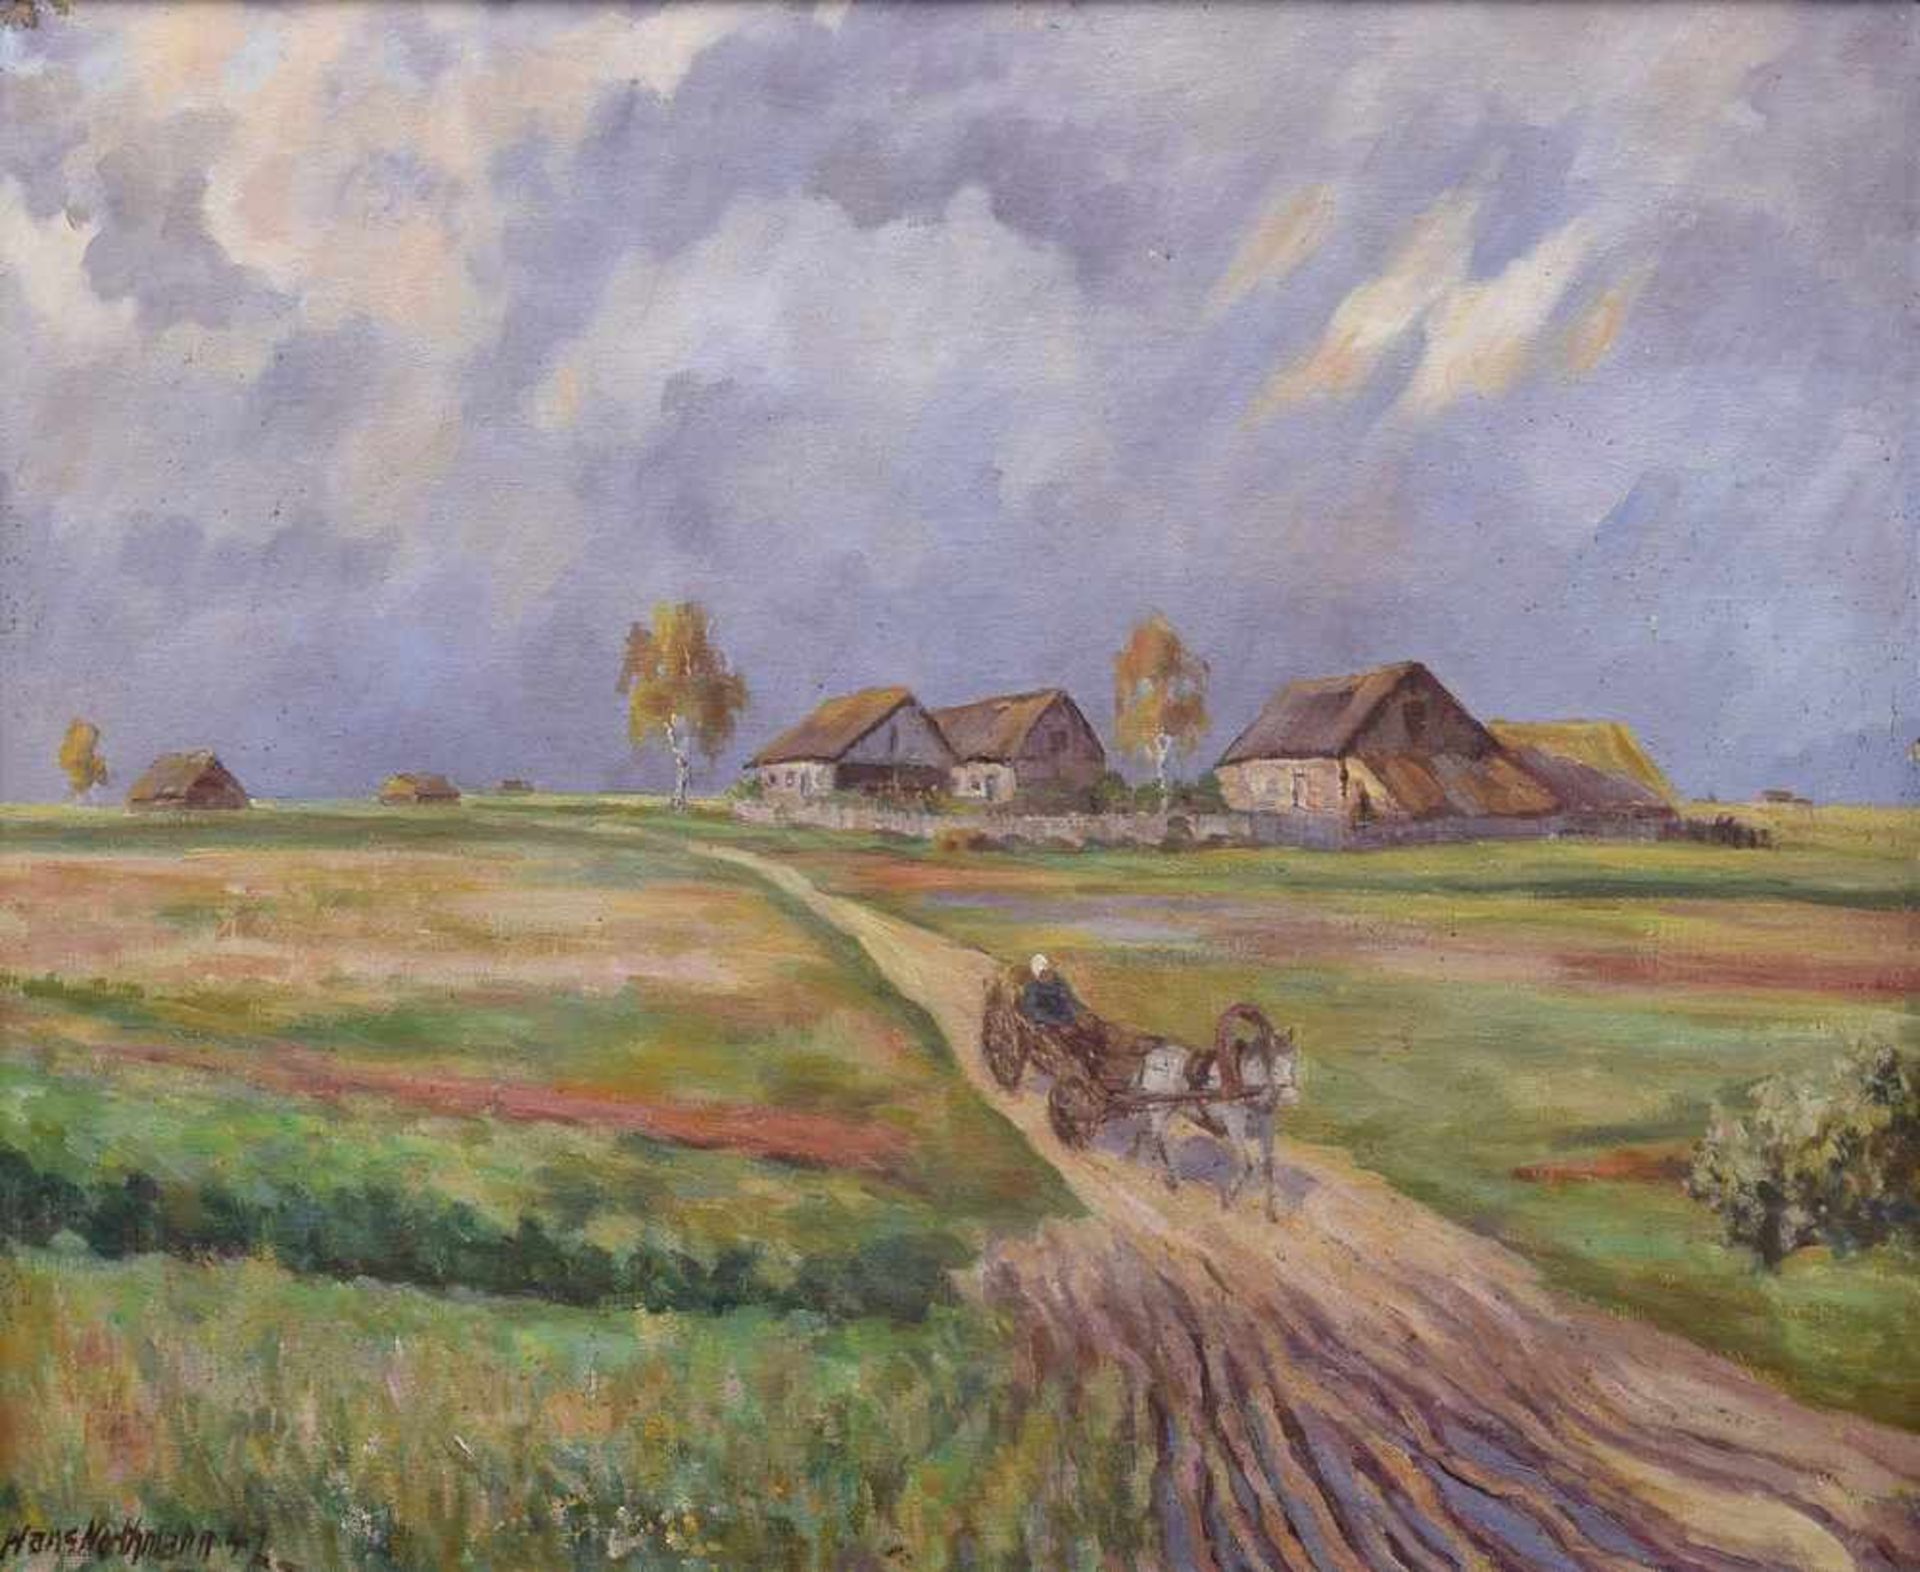 Northmann, Hans (1883-1972) "Russisches Dorf bei Smolensk" 1942, Öl/Leinwand, u.l.sign./dat. "Sept.